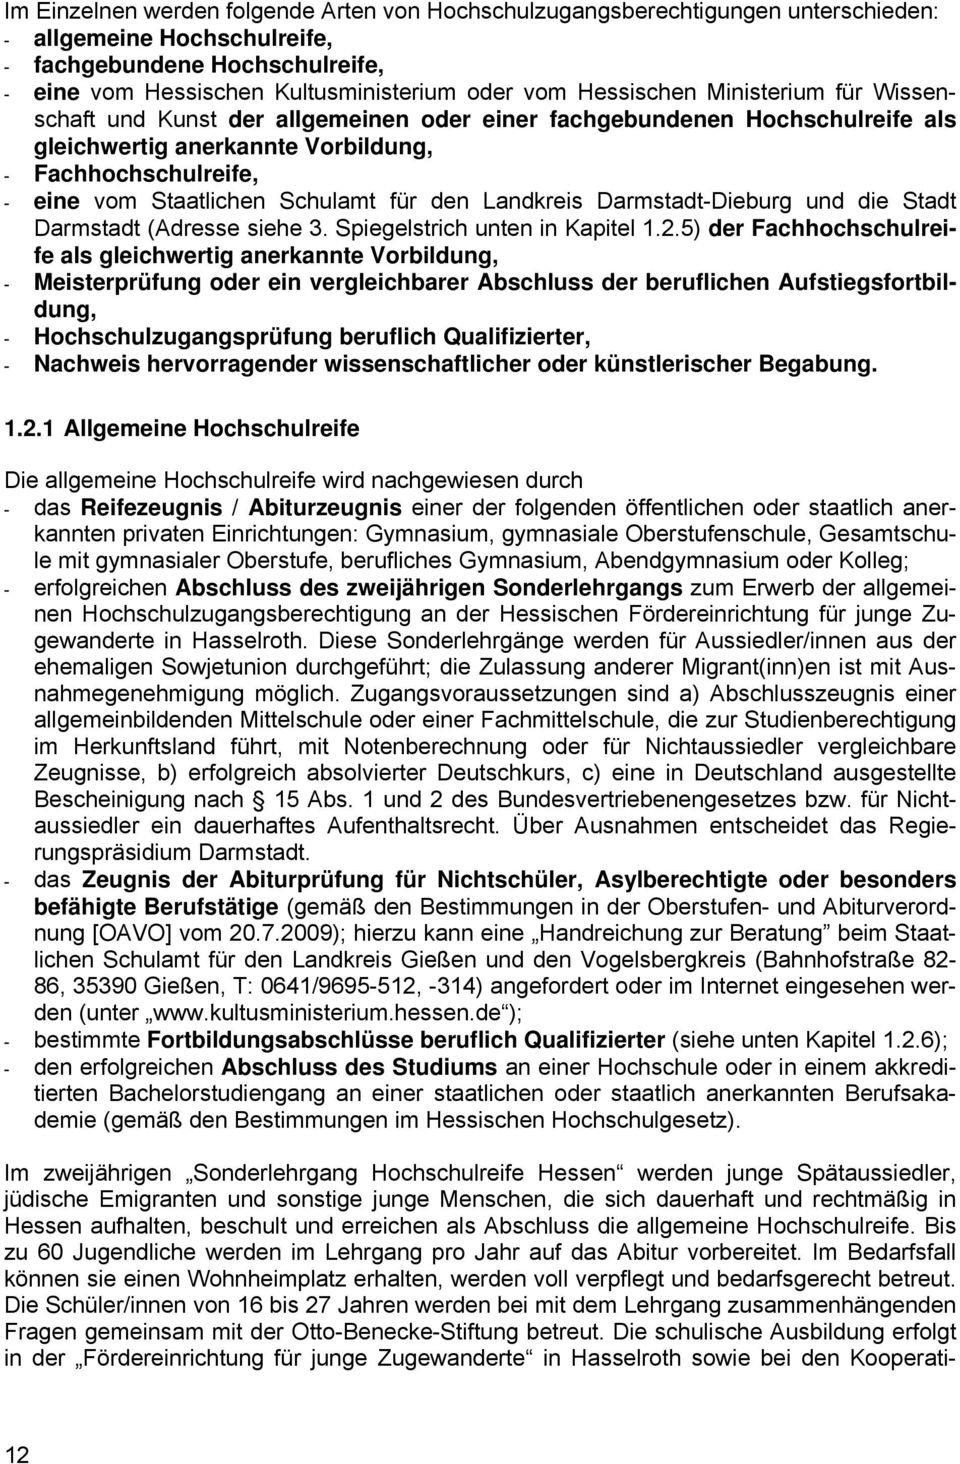 Schulamt für den Landkreis Darmstadt-Dieburg und die Stadt Darmstadt (Adresse siehe 3. Spiegelstrich unten in Kapitel 1.2.